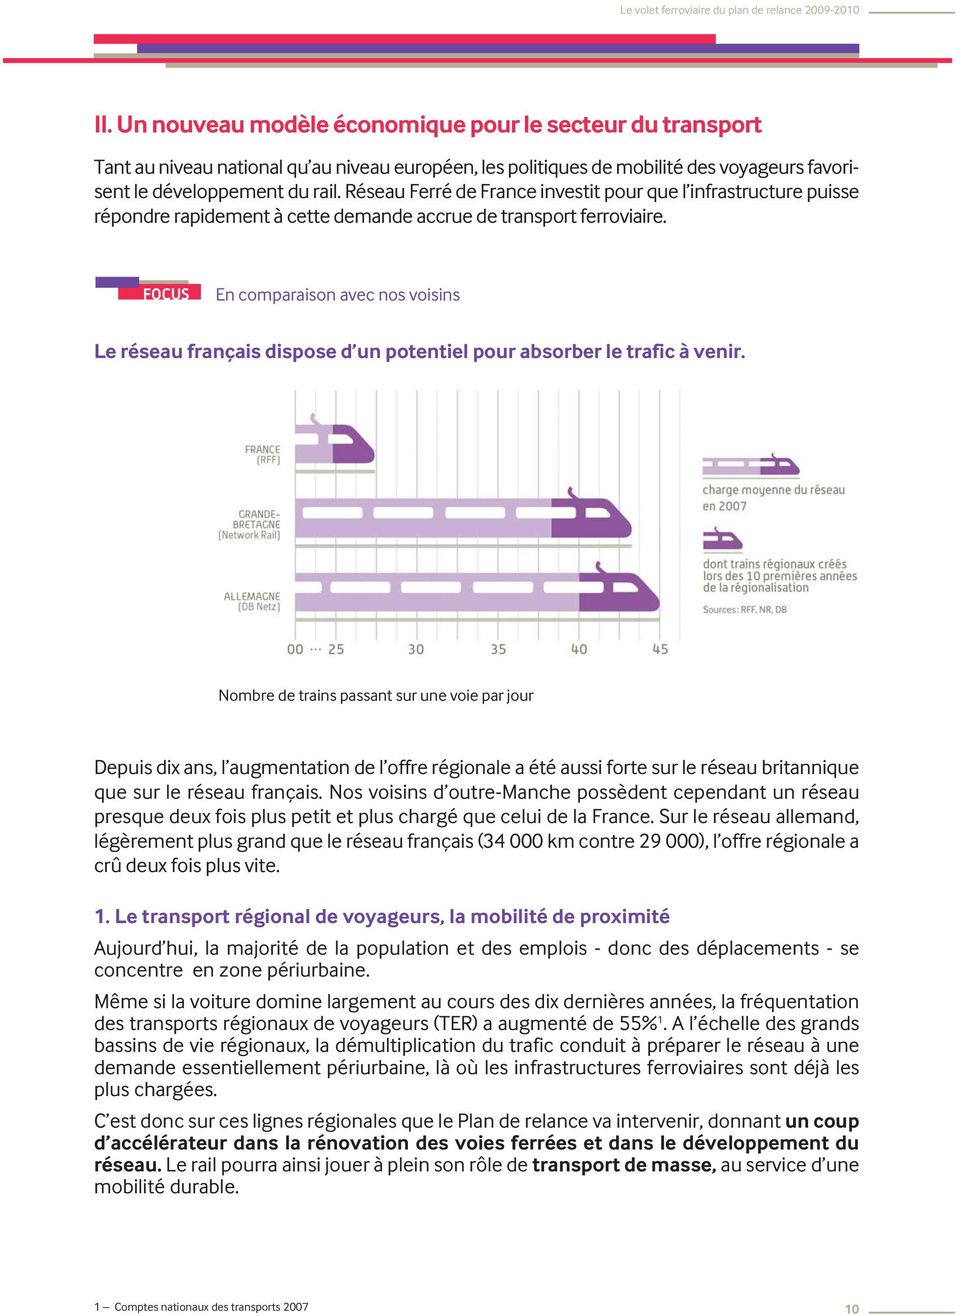 FOCUS En comparaison avec nos voisins Le réseau français dispose d un potentiel pour absorber le trafic à venir.